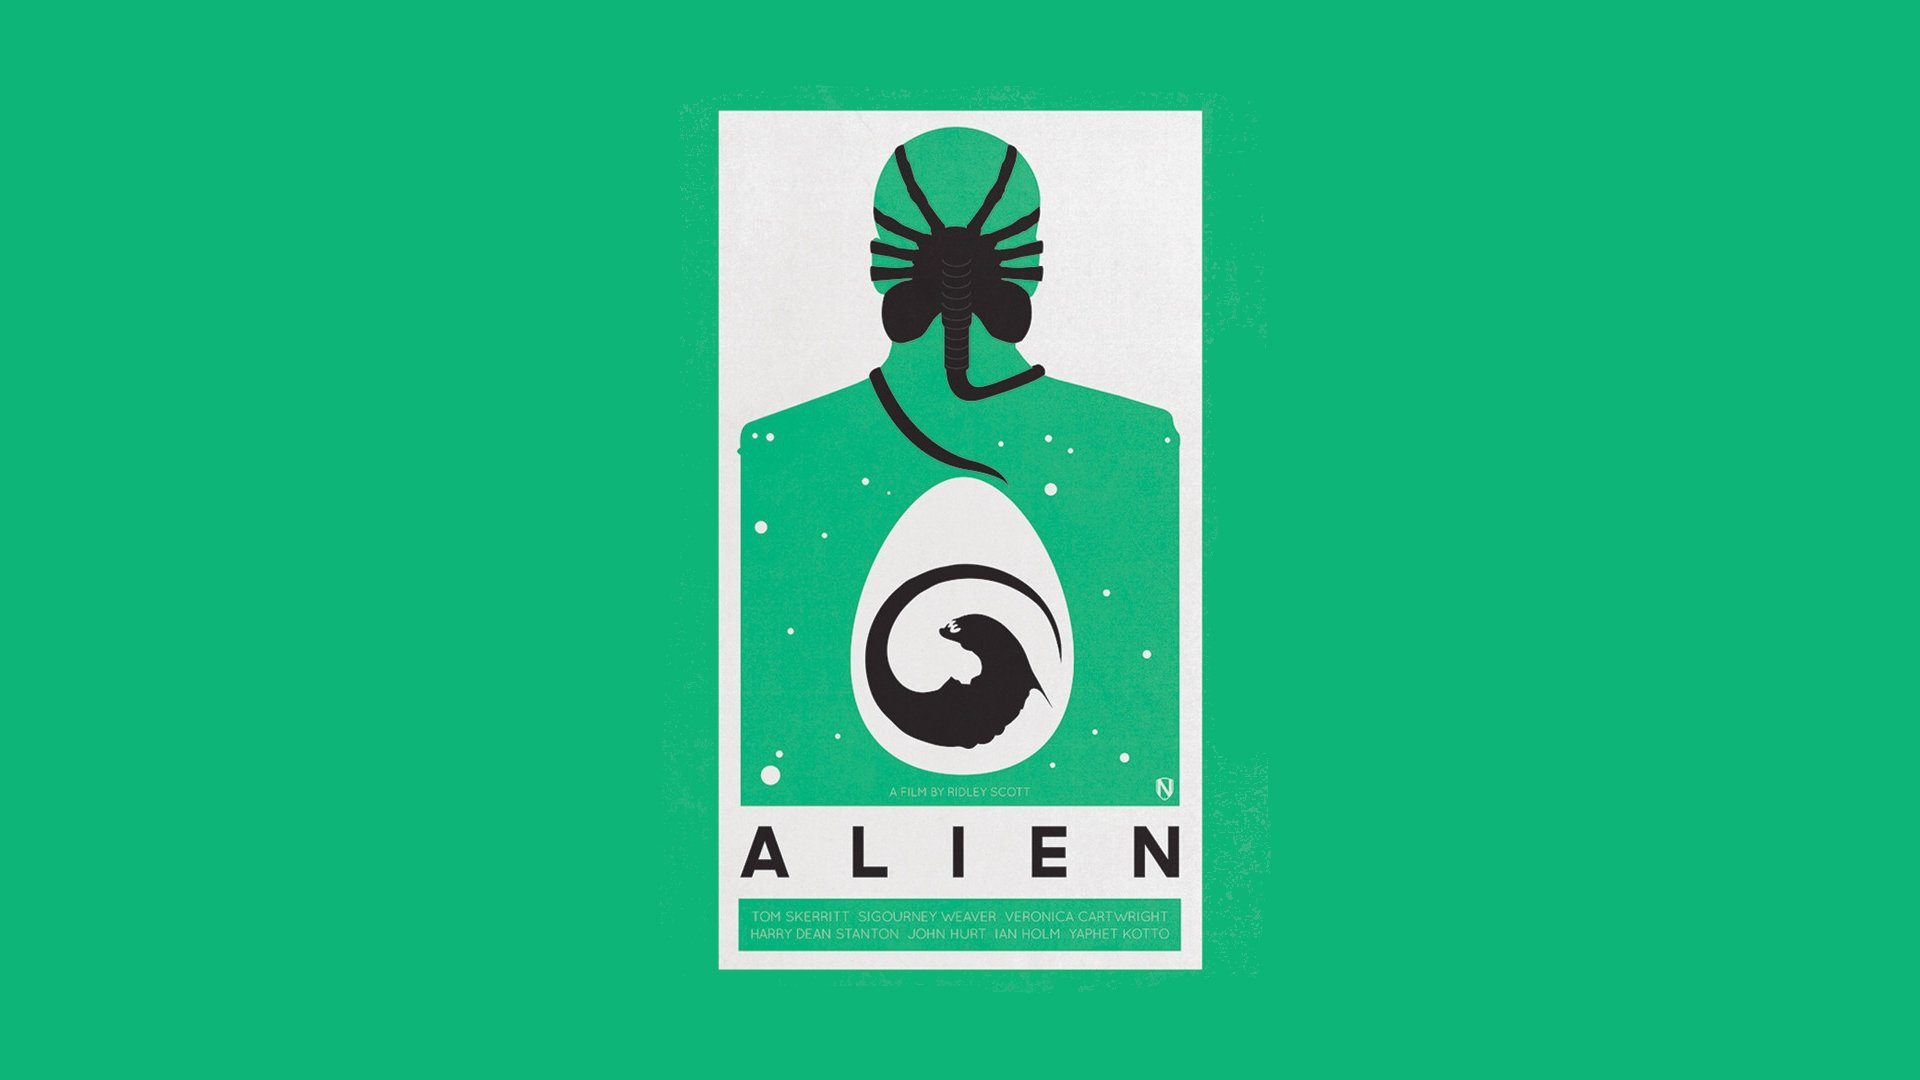 Download full hd 1920x1080 Alien Movie desktop wallpaper ID:25293 for free